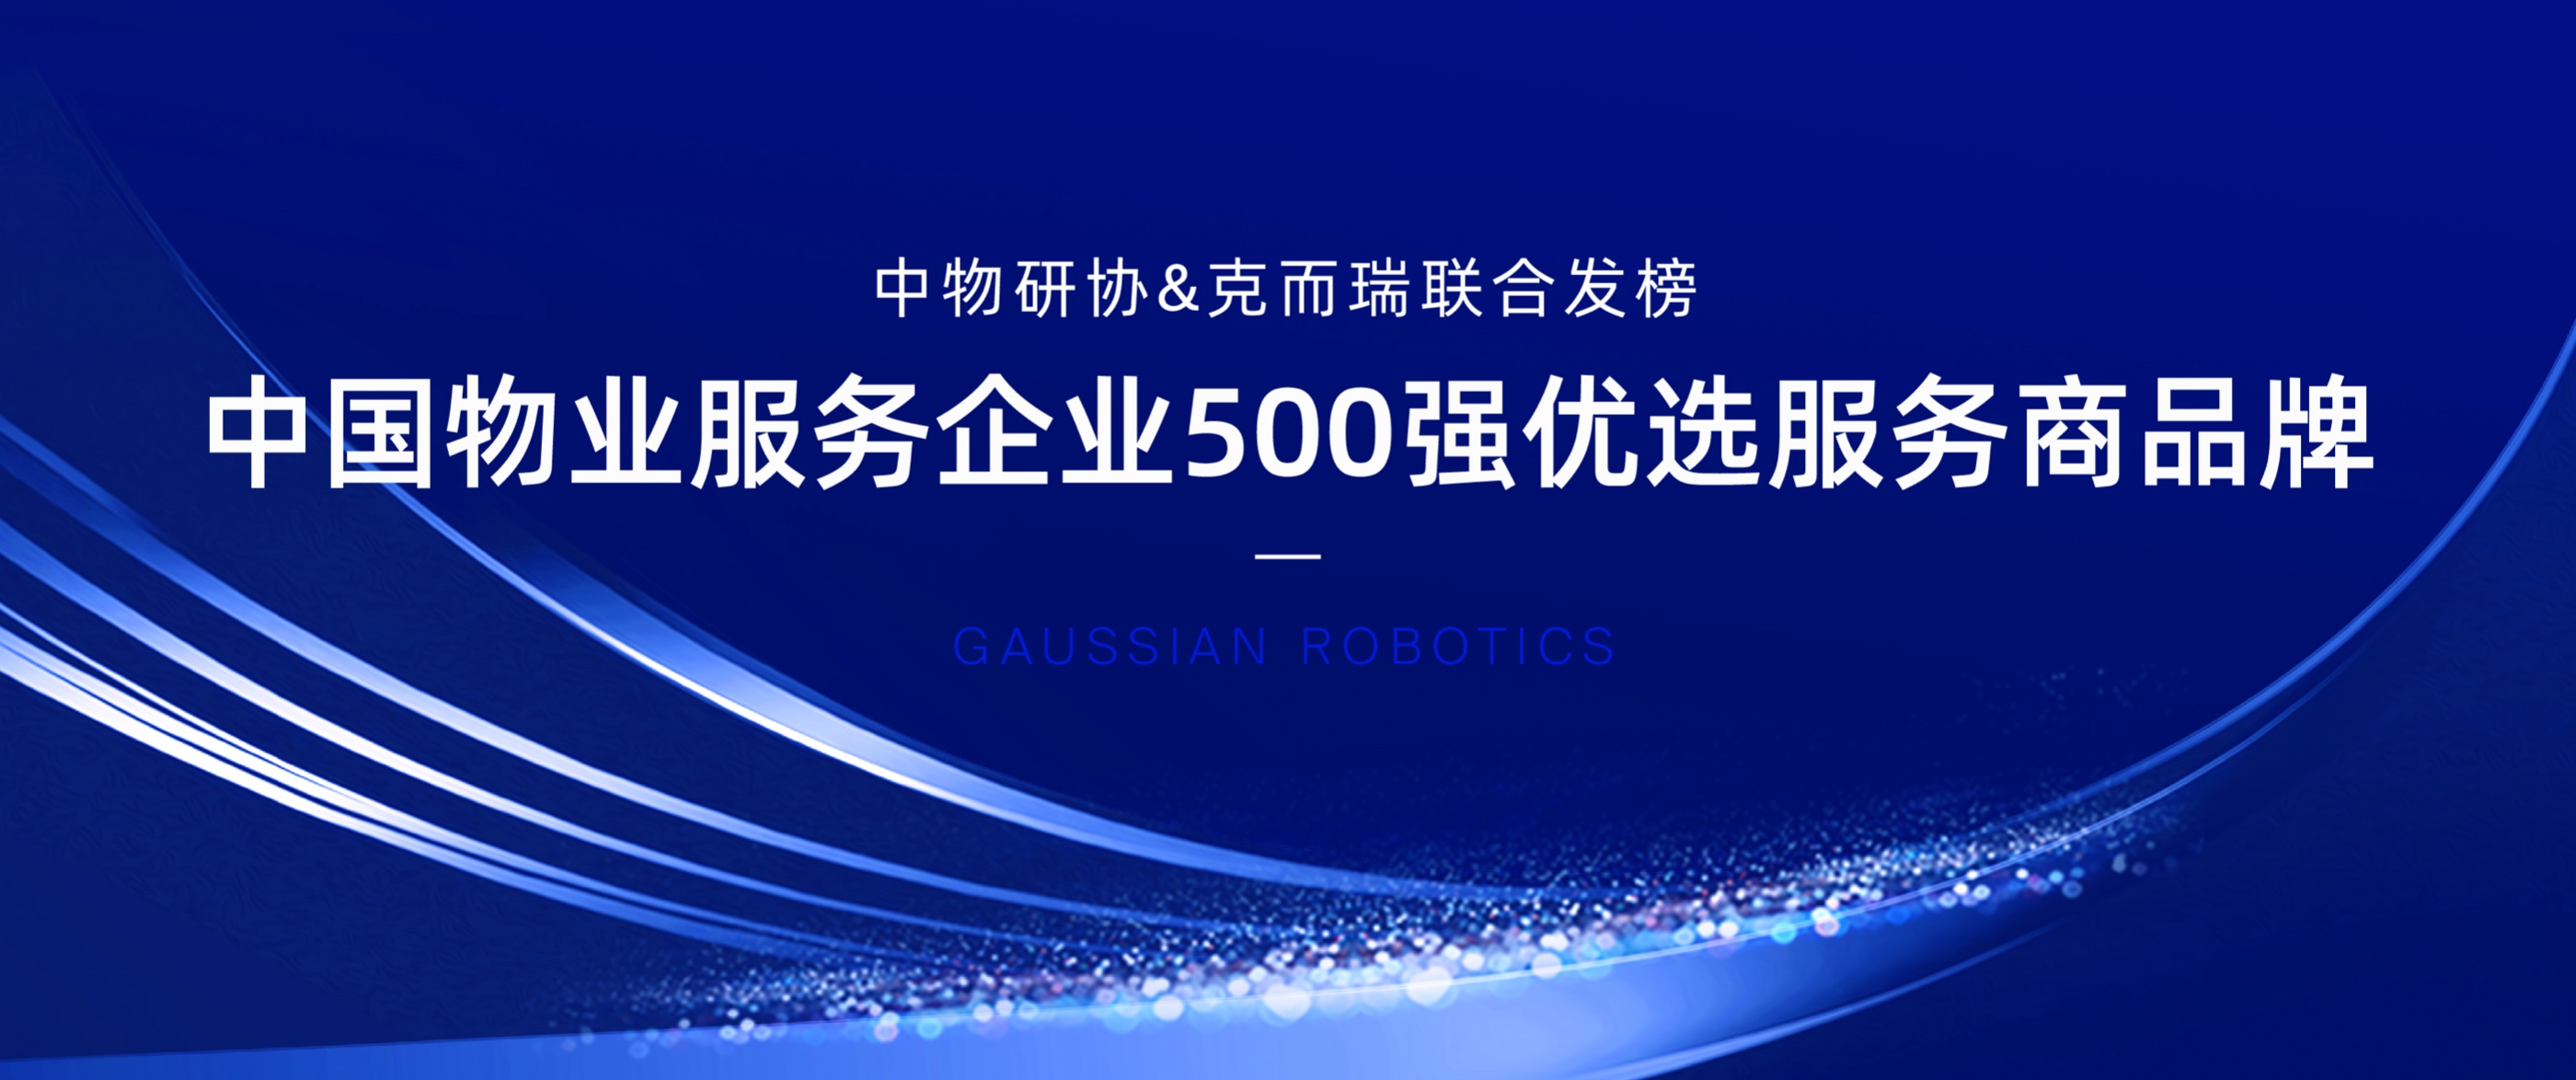 高仙机器人再登“智慧社区领域-智能机器人”榜首